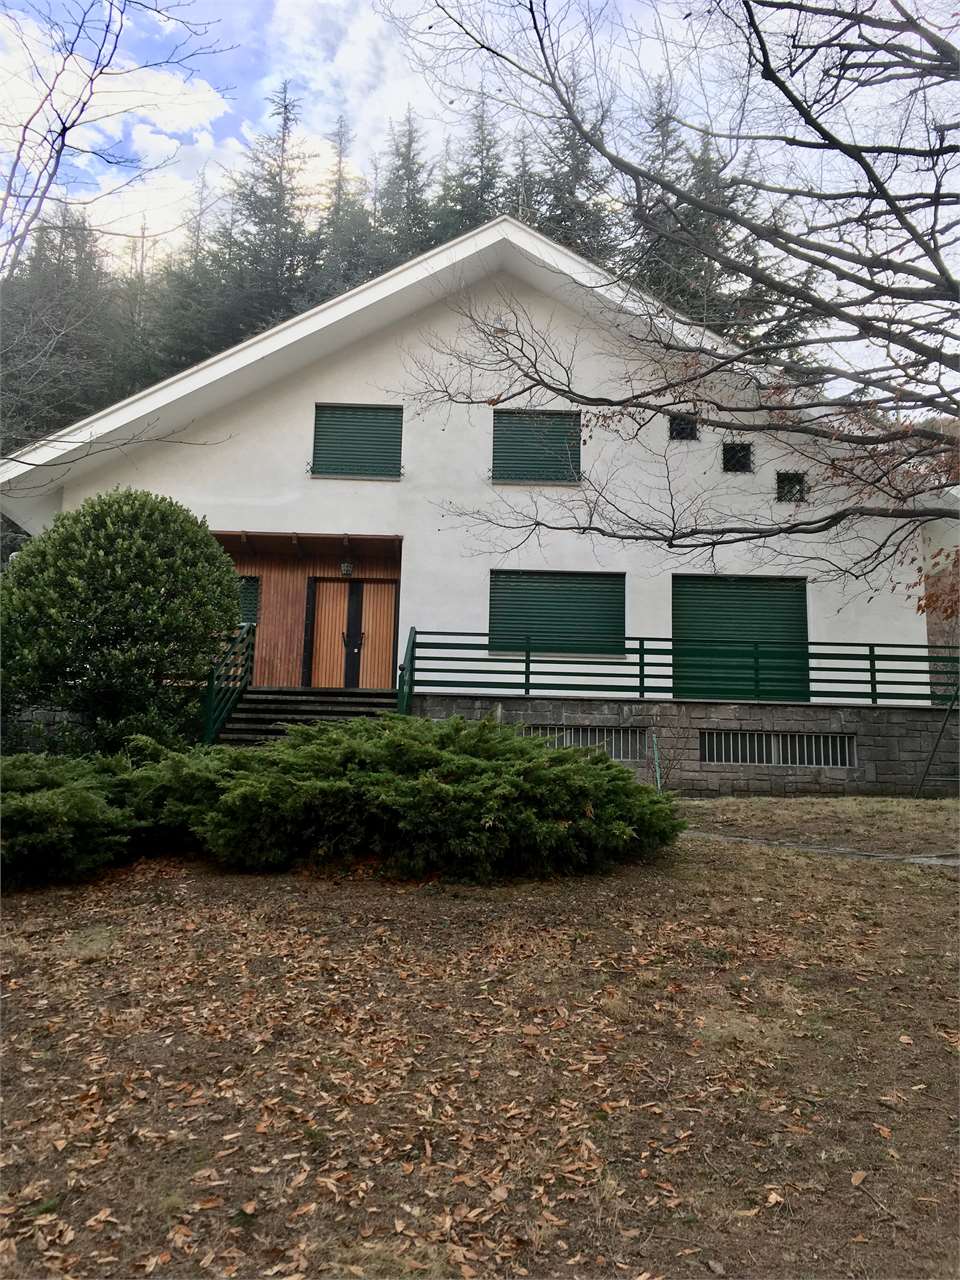 Villa in vendita a Chiomonte, 9999 locali, prezzo € 250.000 | PortaleAgenzieImmobiliari.it